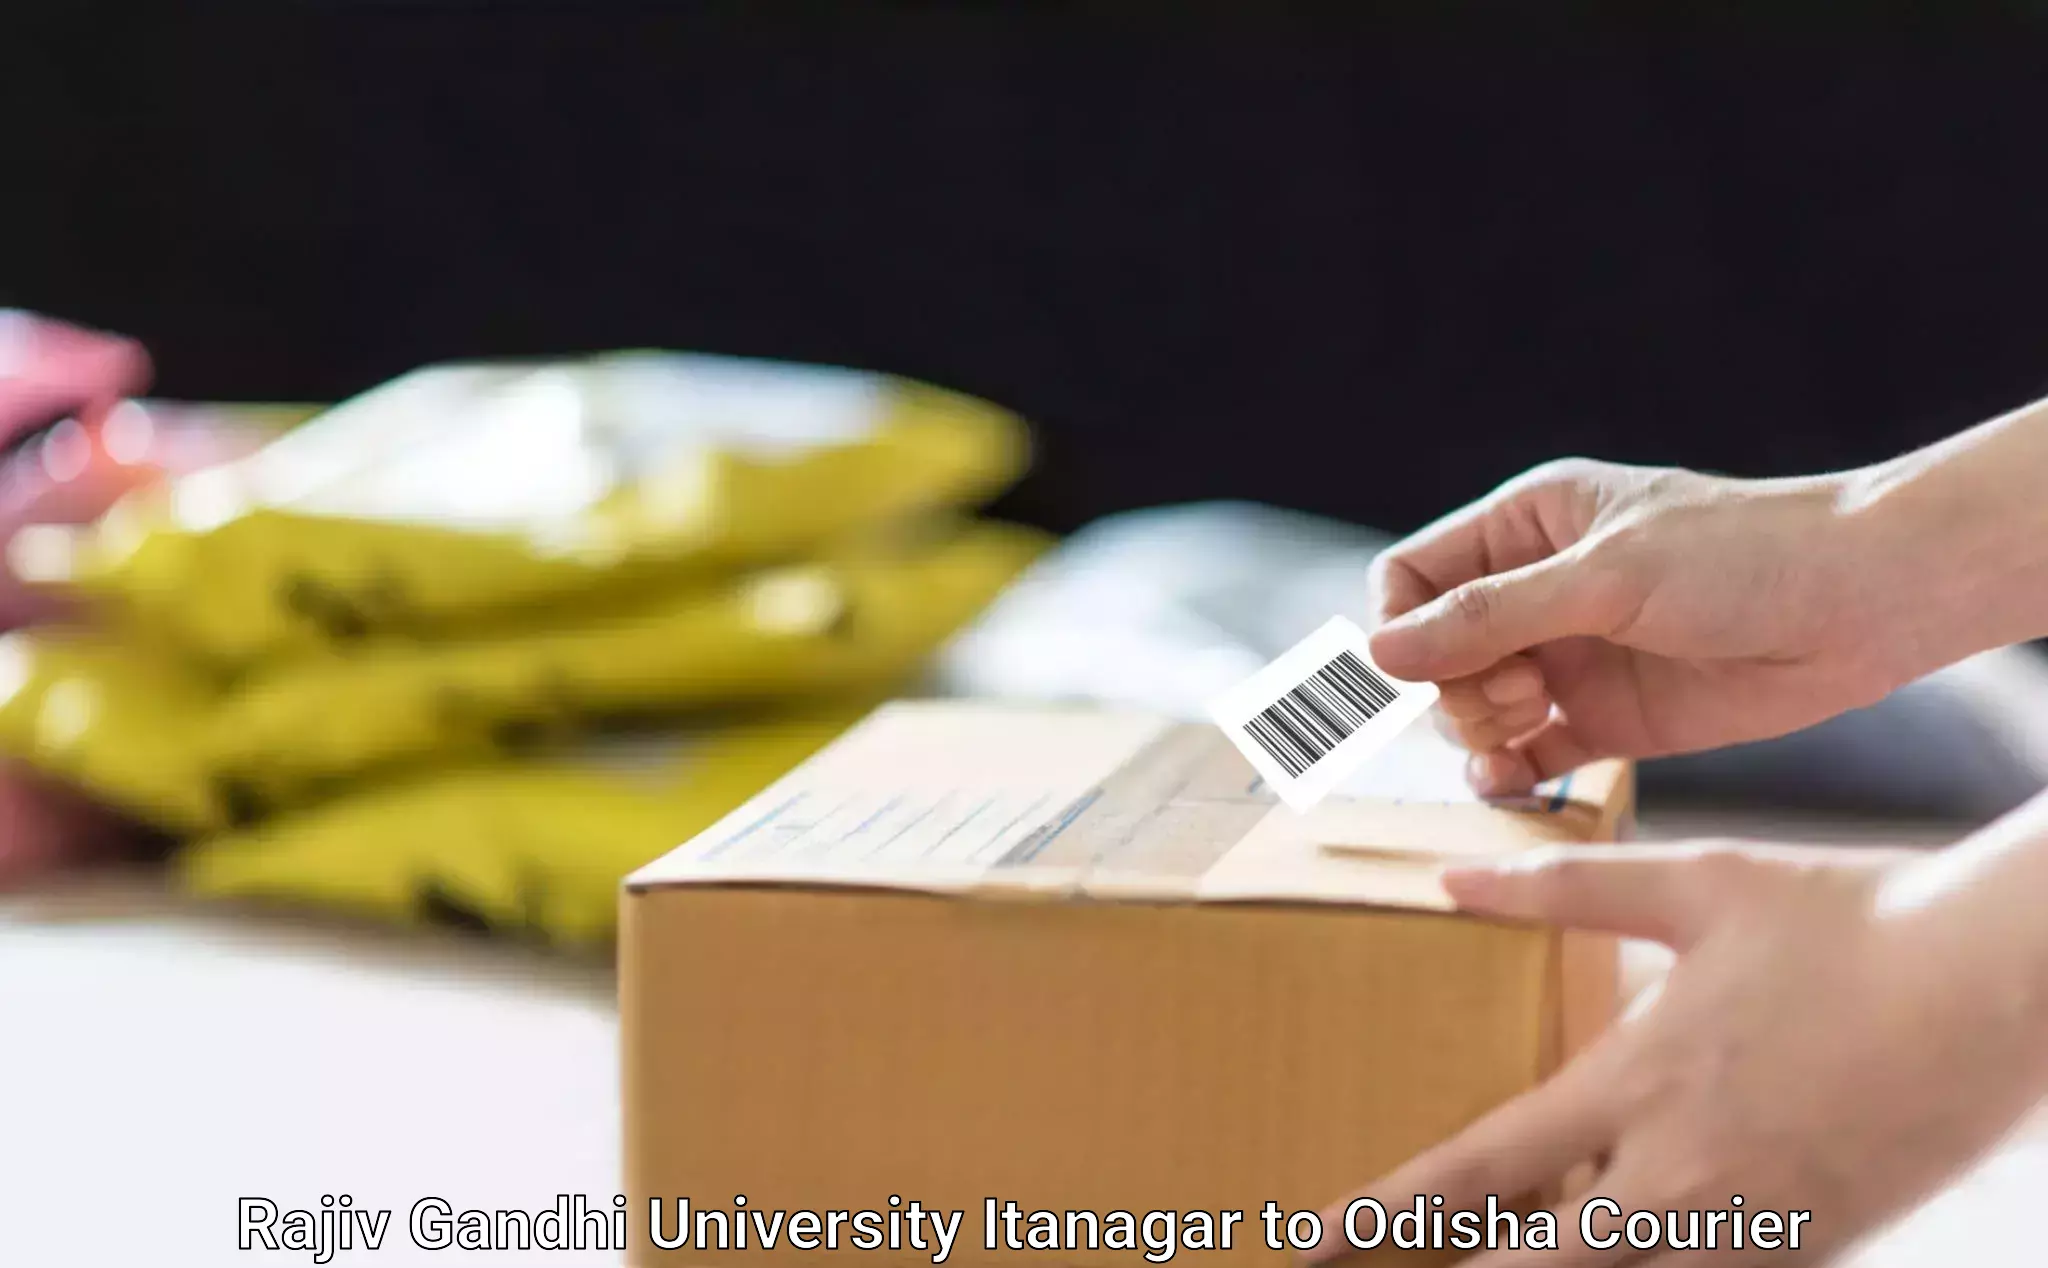 Expedited shipping solutions Rajiv Gandhi University Itanagar to Odisha